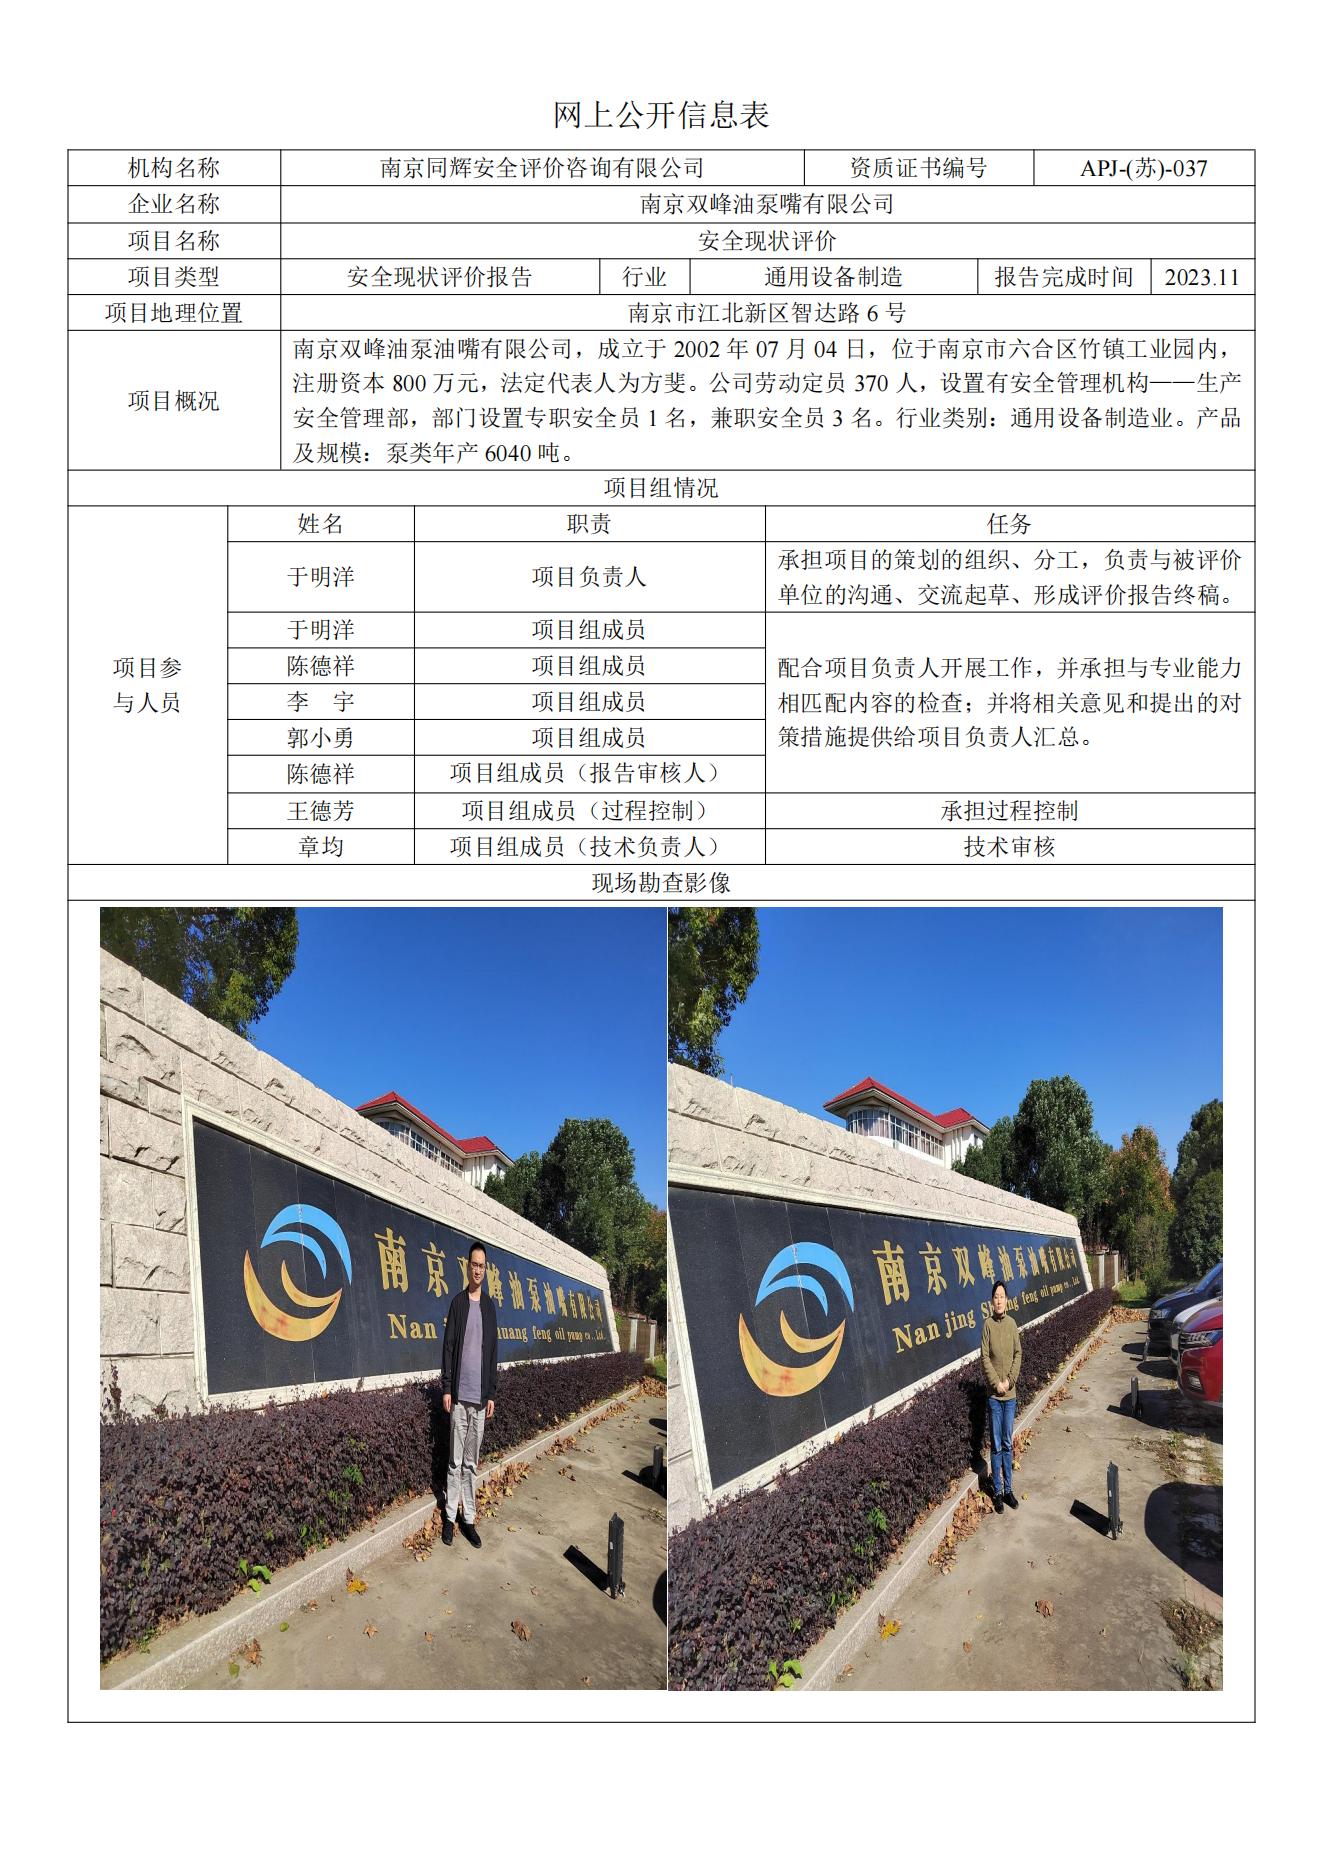 3 202311南京双峰油泵嘴有限公司现状评价报告网上公开信息表_00.jpg